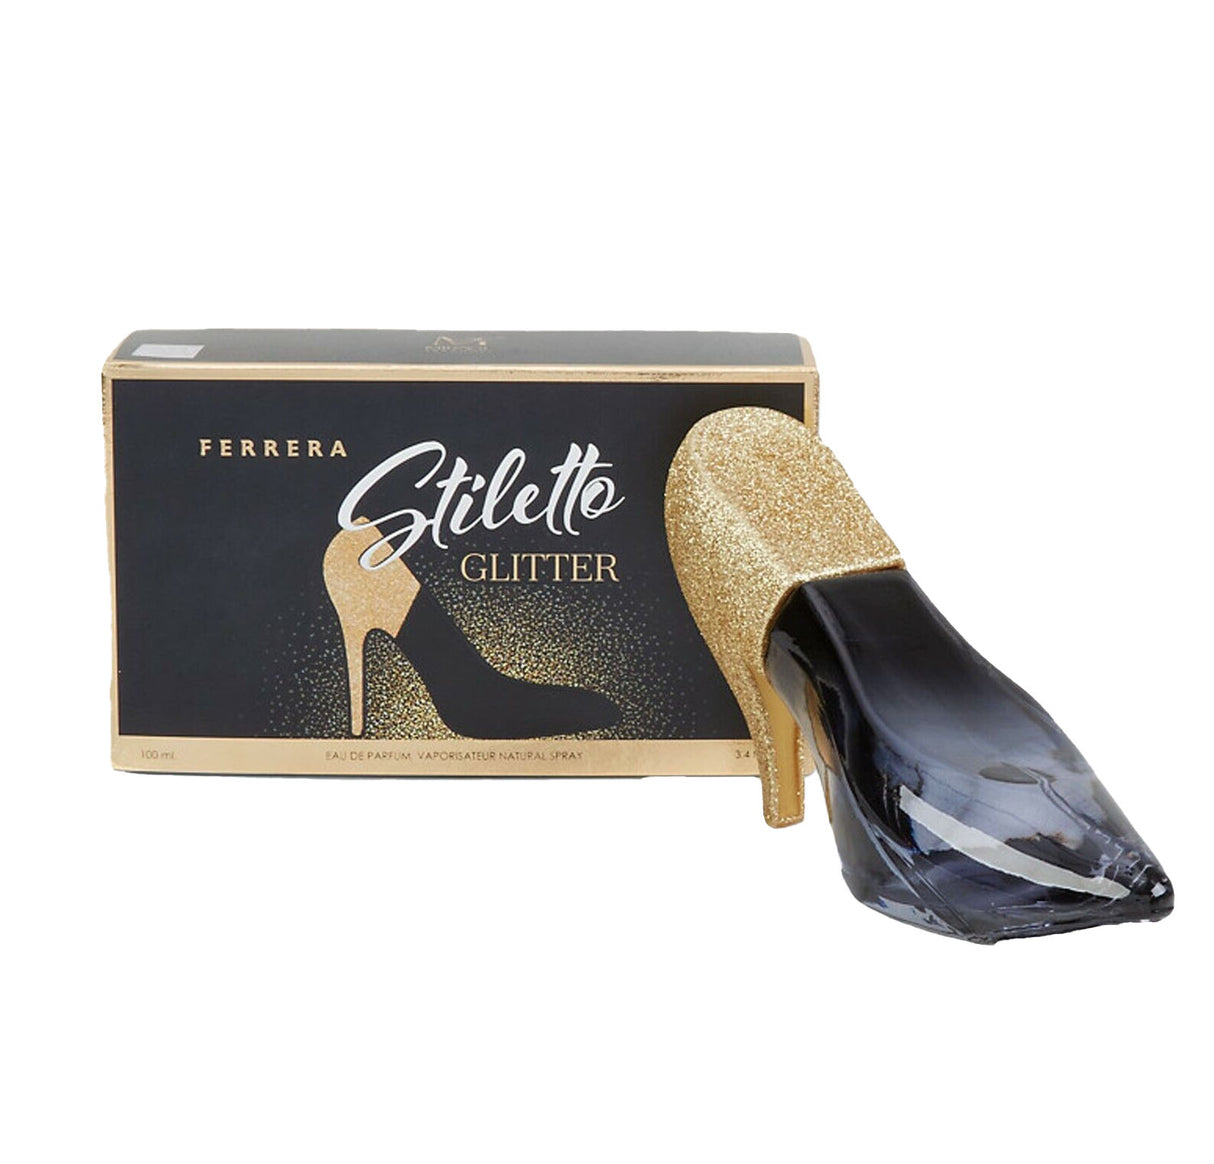 Ferrera Stiletto Glitter W, Perfume de Mujer